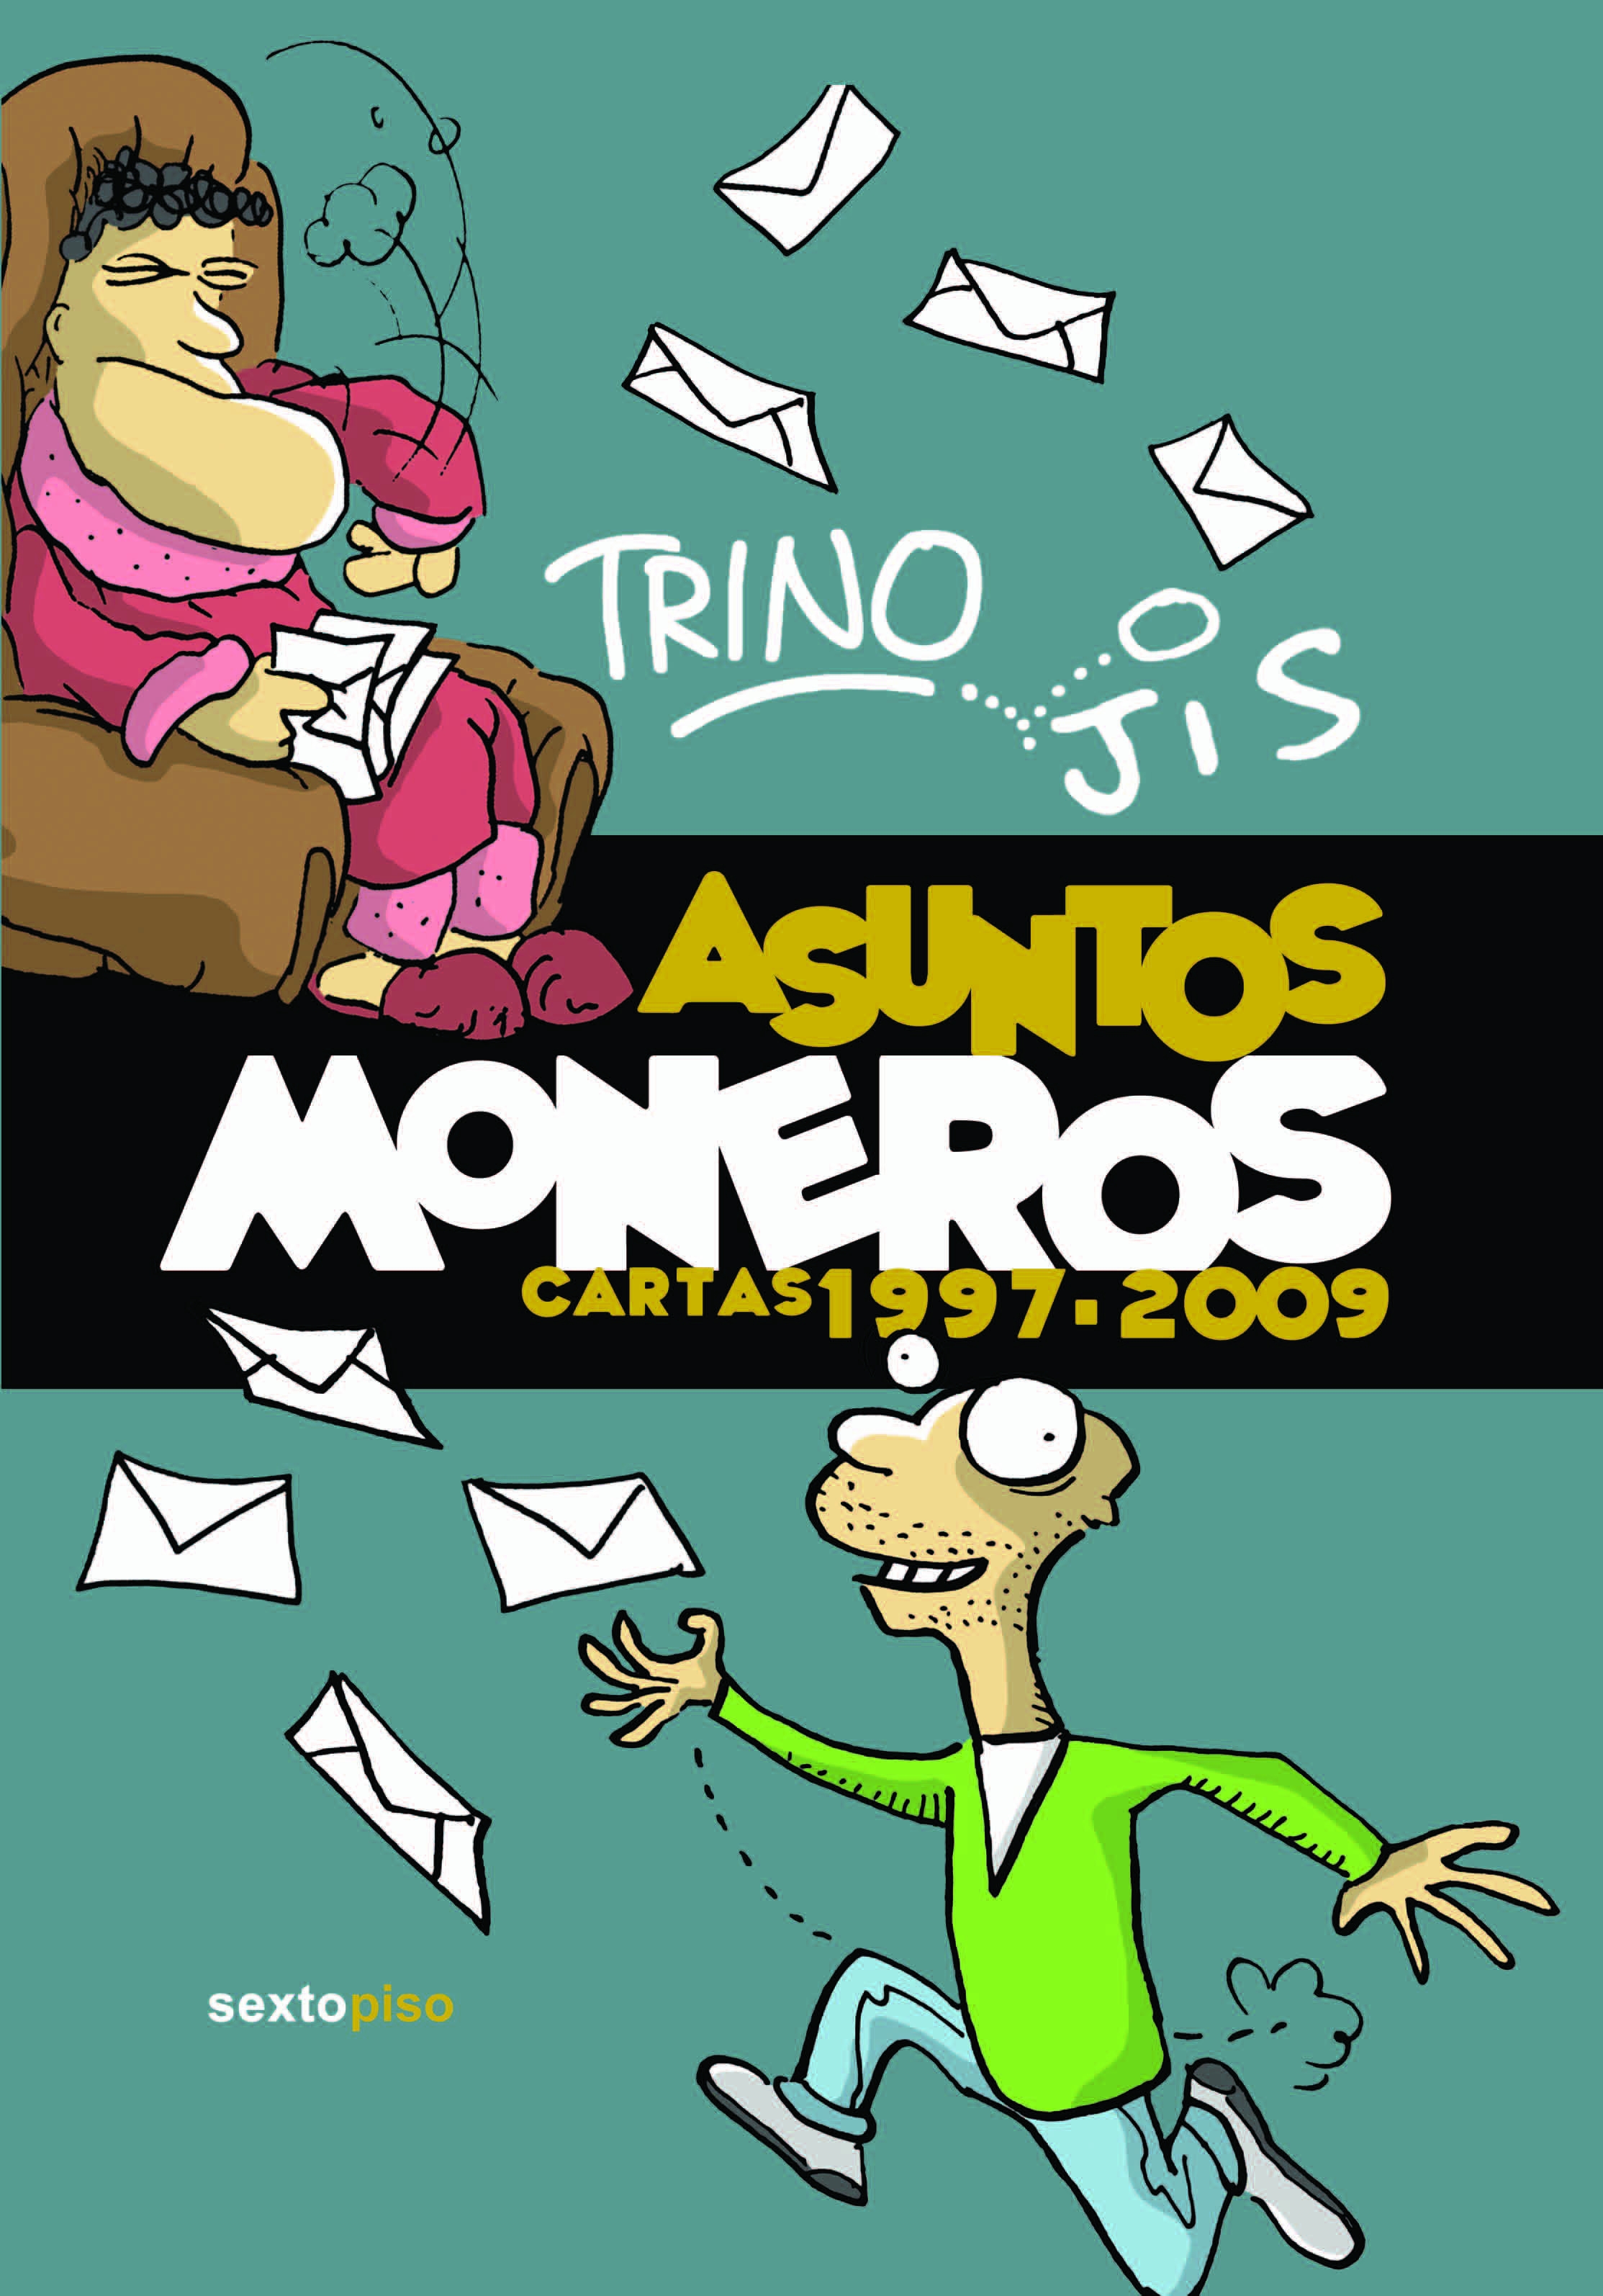 asuntos-moneros-cartas-1997-2009